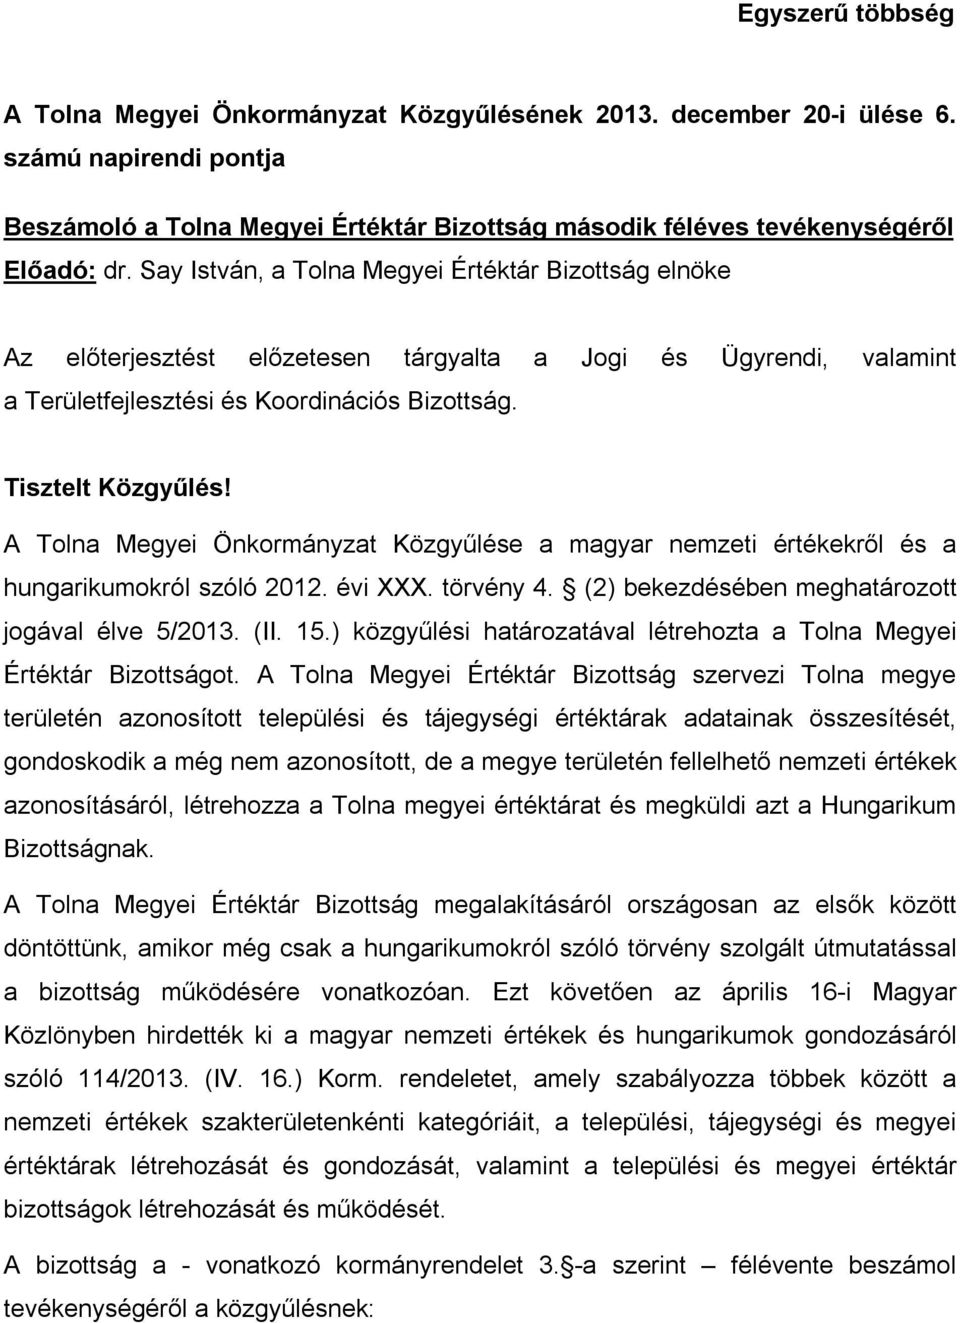 A Tolna Megyei Önkormányzat Közgyűlése a magyar nemzeti értékekről és a hungarikumokról szóló 2012. évi XXX. törvény 4. (2) bekezdésében meghatározott jogával élve 5/2013. (II. 15.